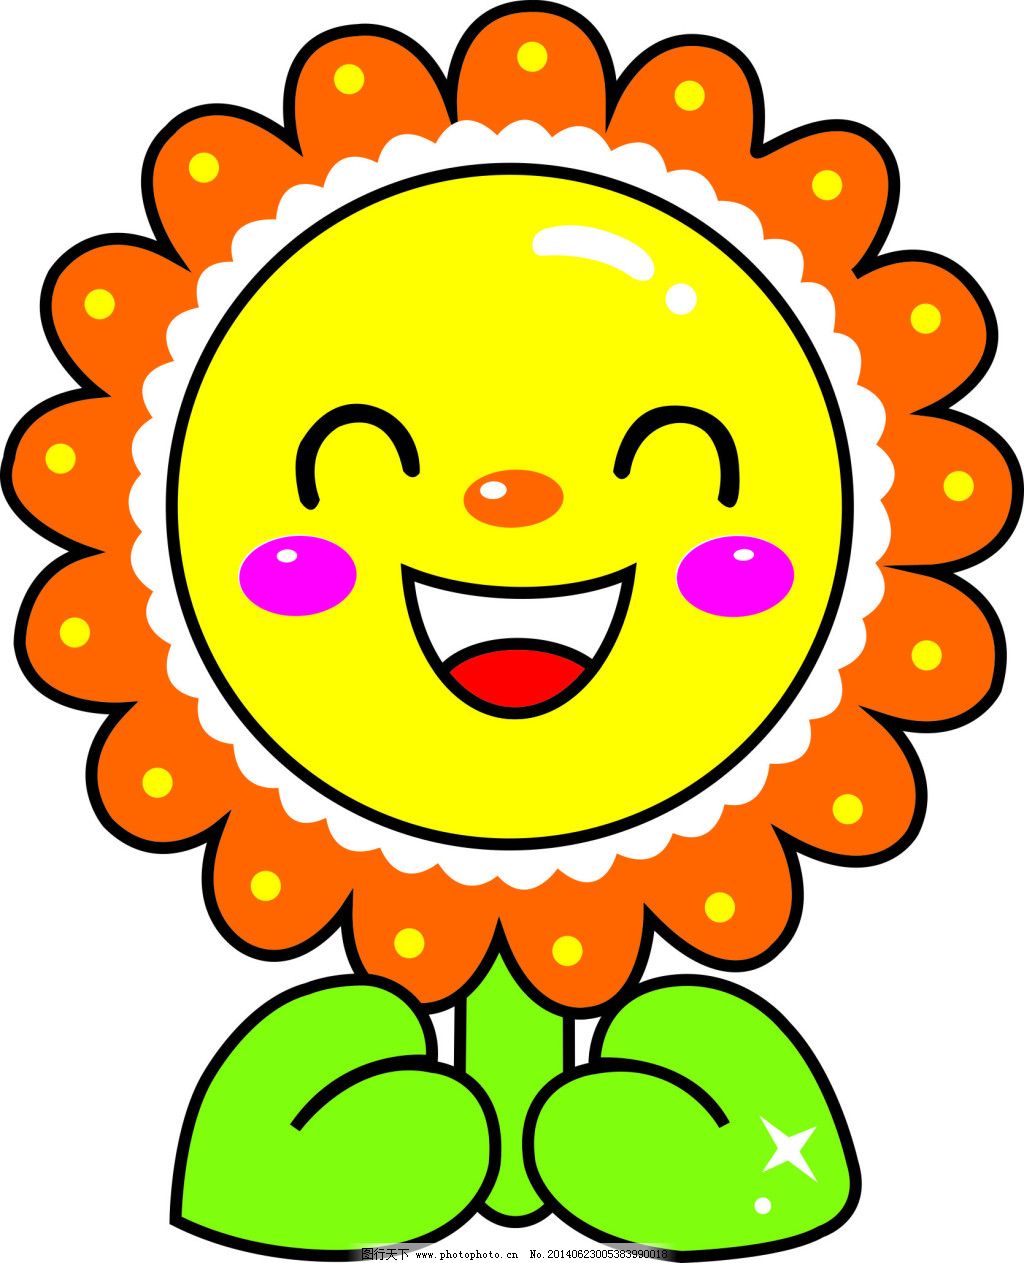 卡通花免费下载 卡通 可爱 太阳花 鲜花 可爱 卡通 鲜花 太阳花 矢量